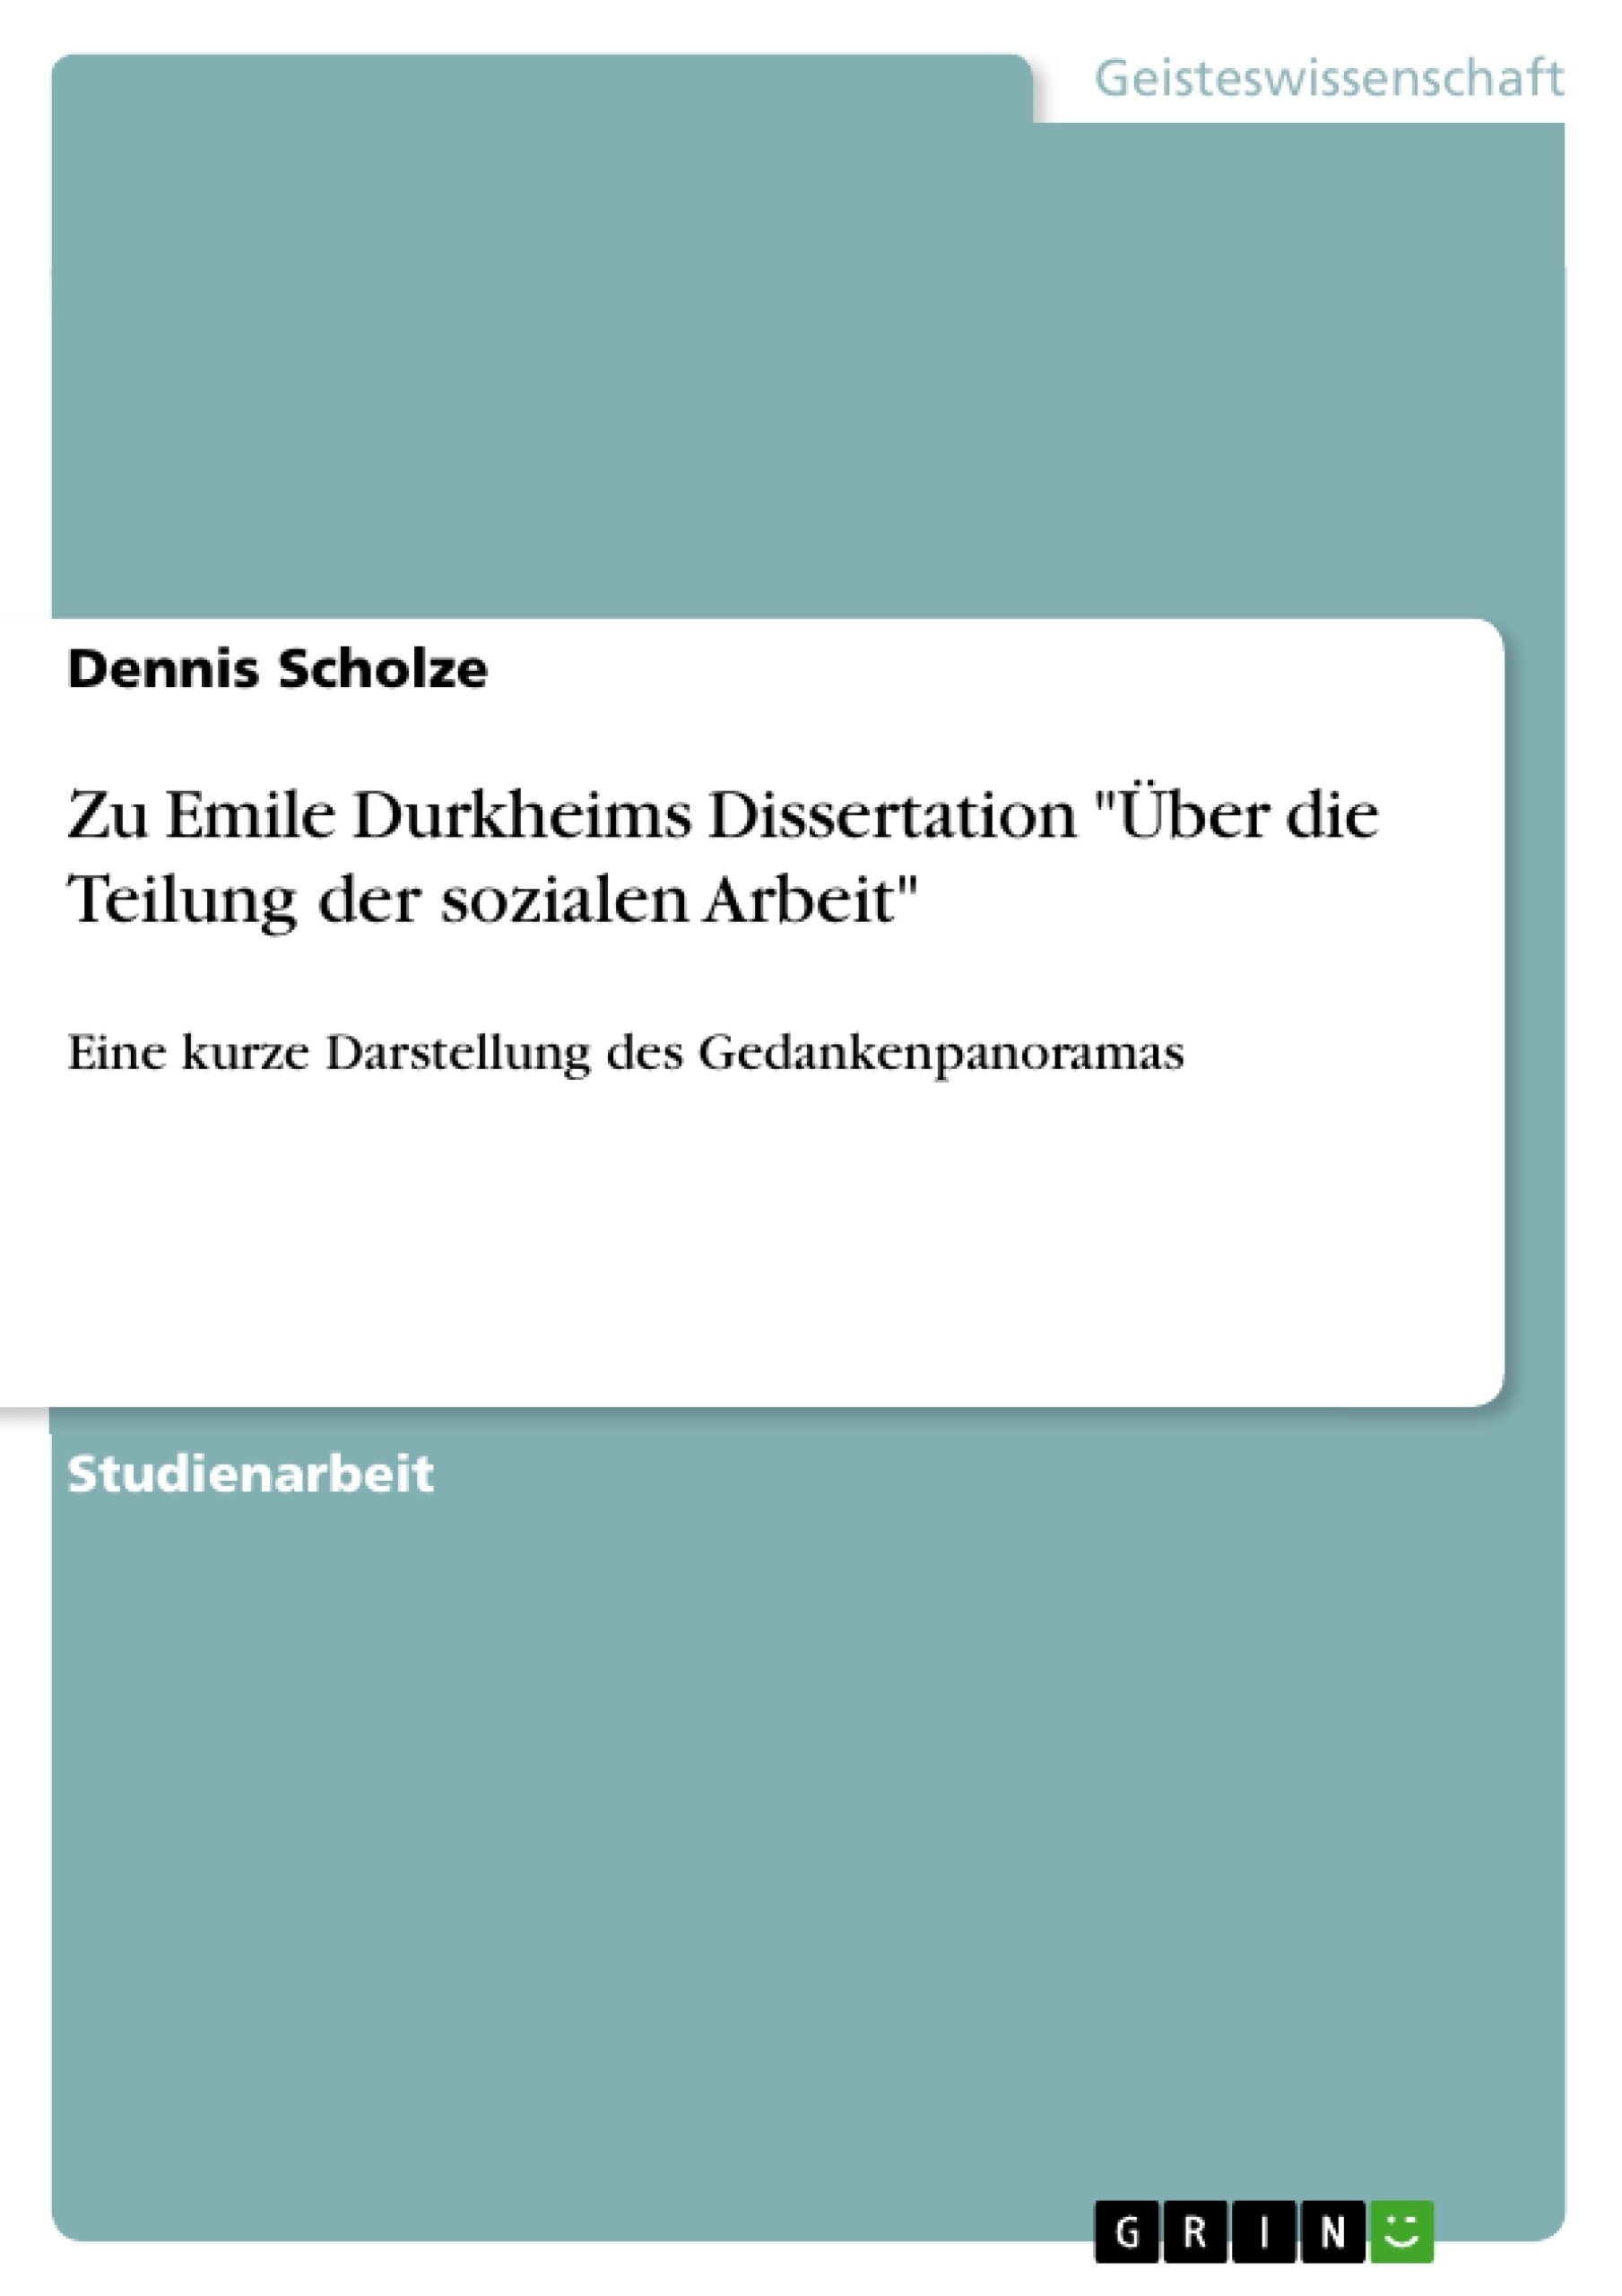 Titre: Zu Emile Durkheims Dissertation "Über die Teilung der sozialen Arbeit"